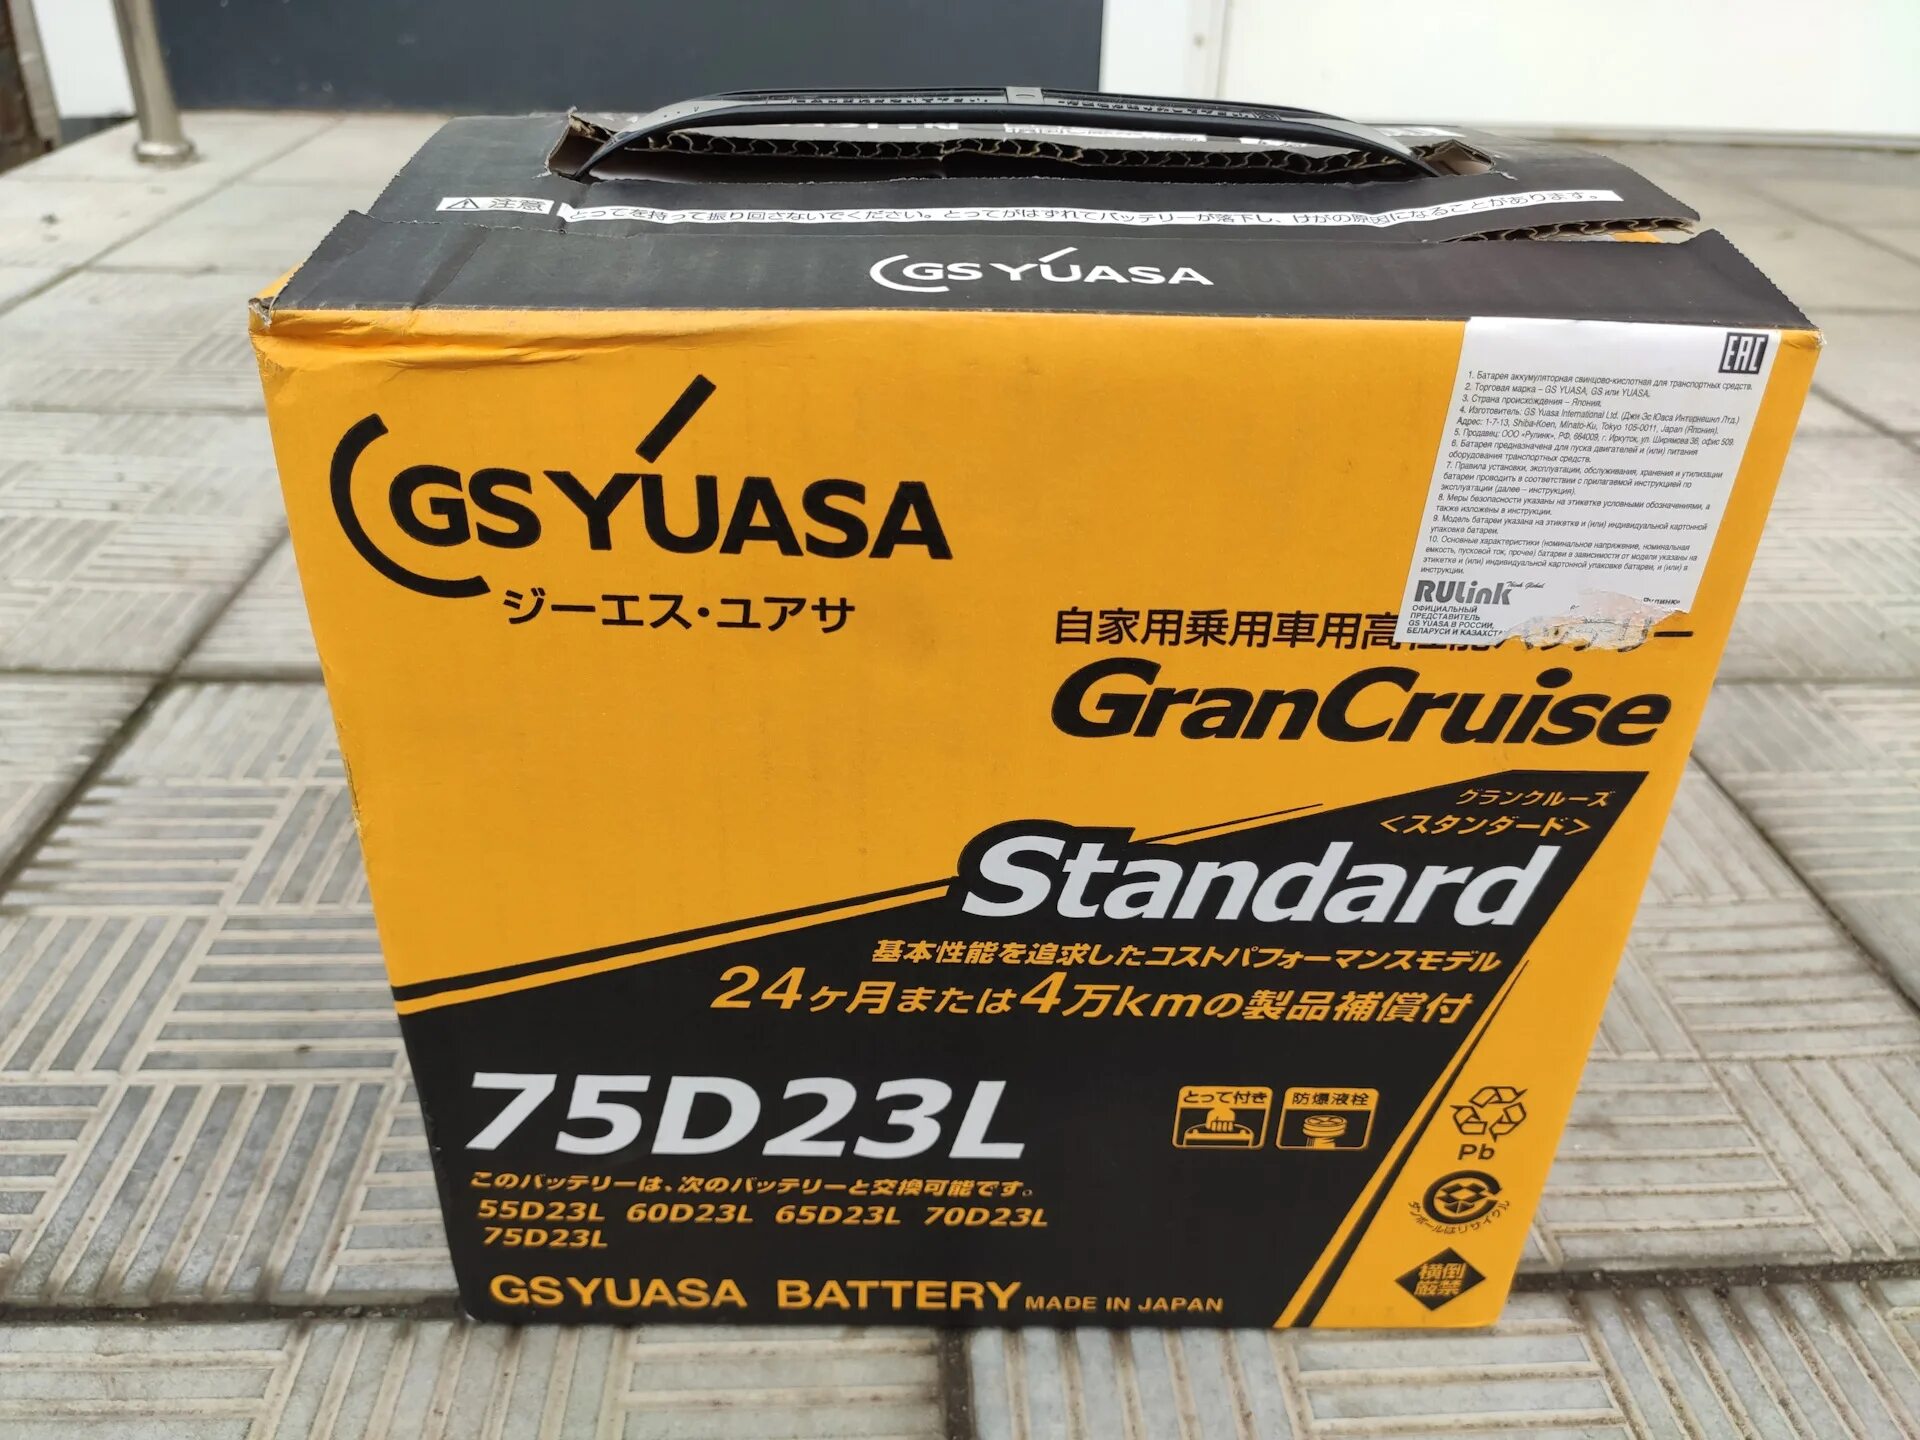 GS Yuasa GST 75d23l 65 Ah. 75d23l аккумулятор GS Yuasa. 75d23l-MF GS Yuasa. 75d23l аккумулятор Mitsubishi.